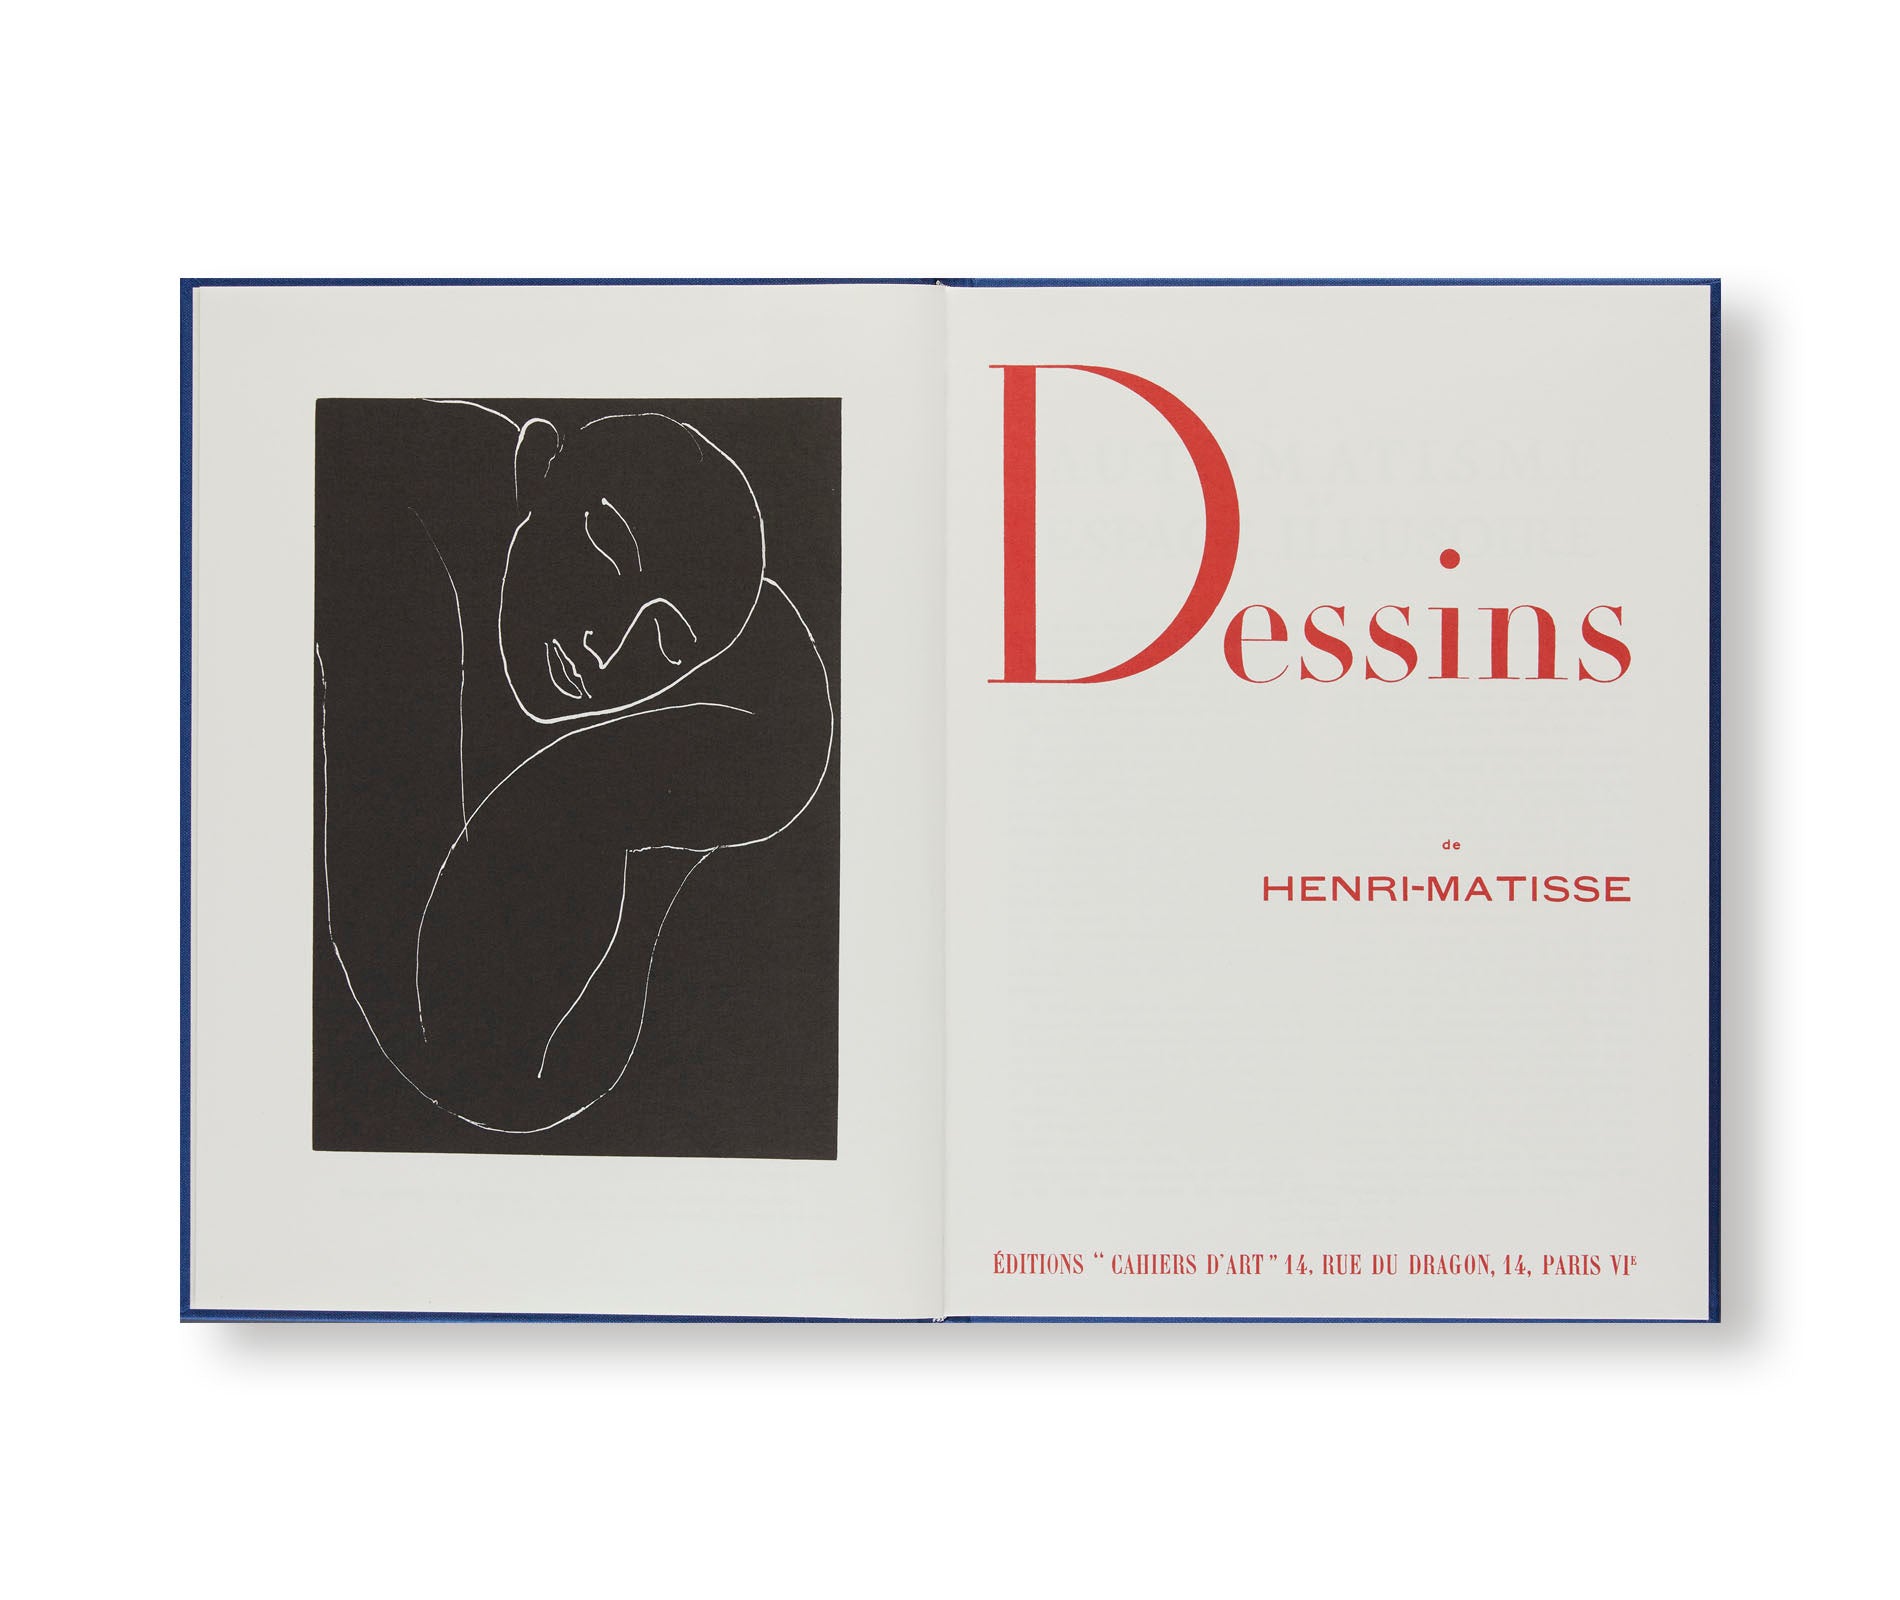 HENRI MATISSE, DESSINS 1936 by Henri Matisse